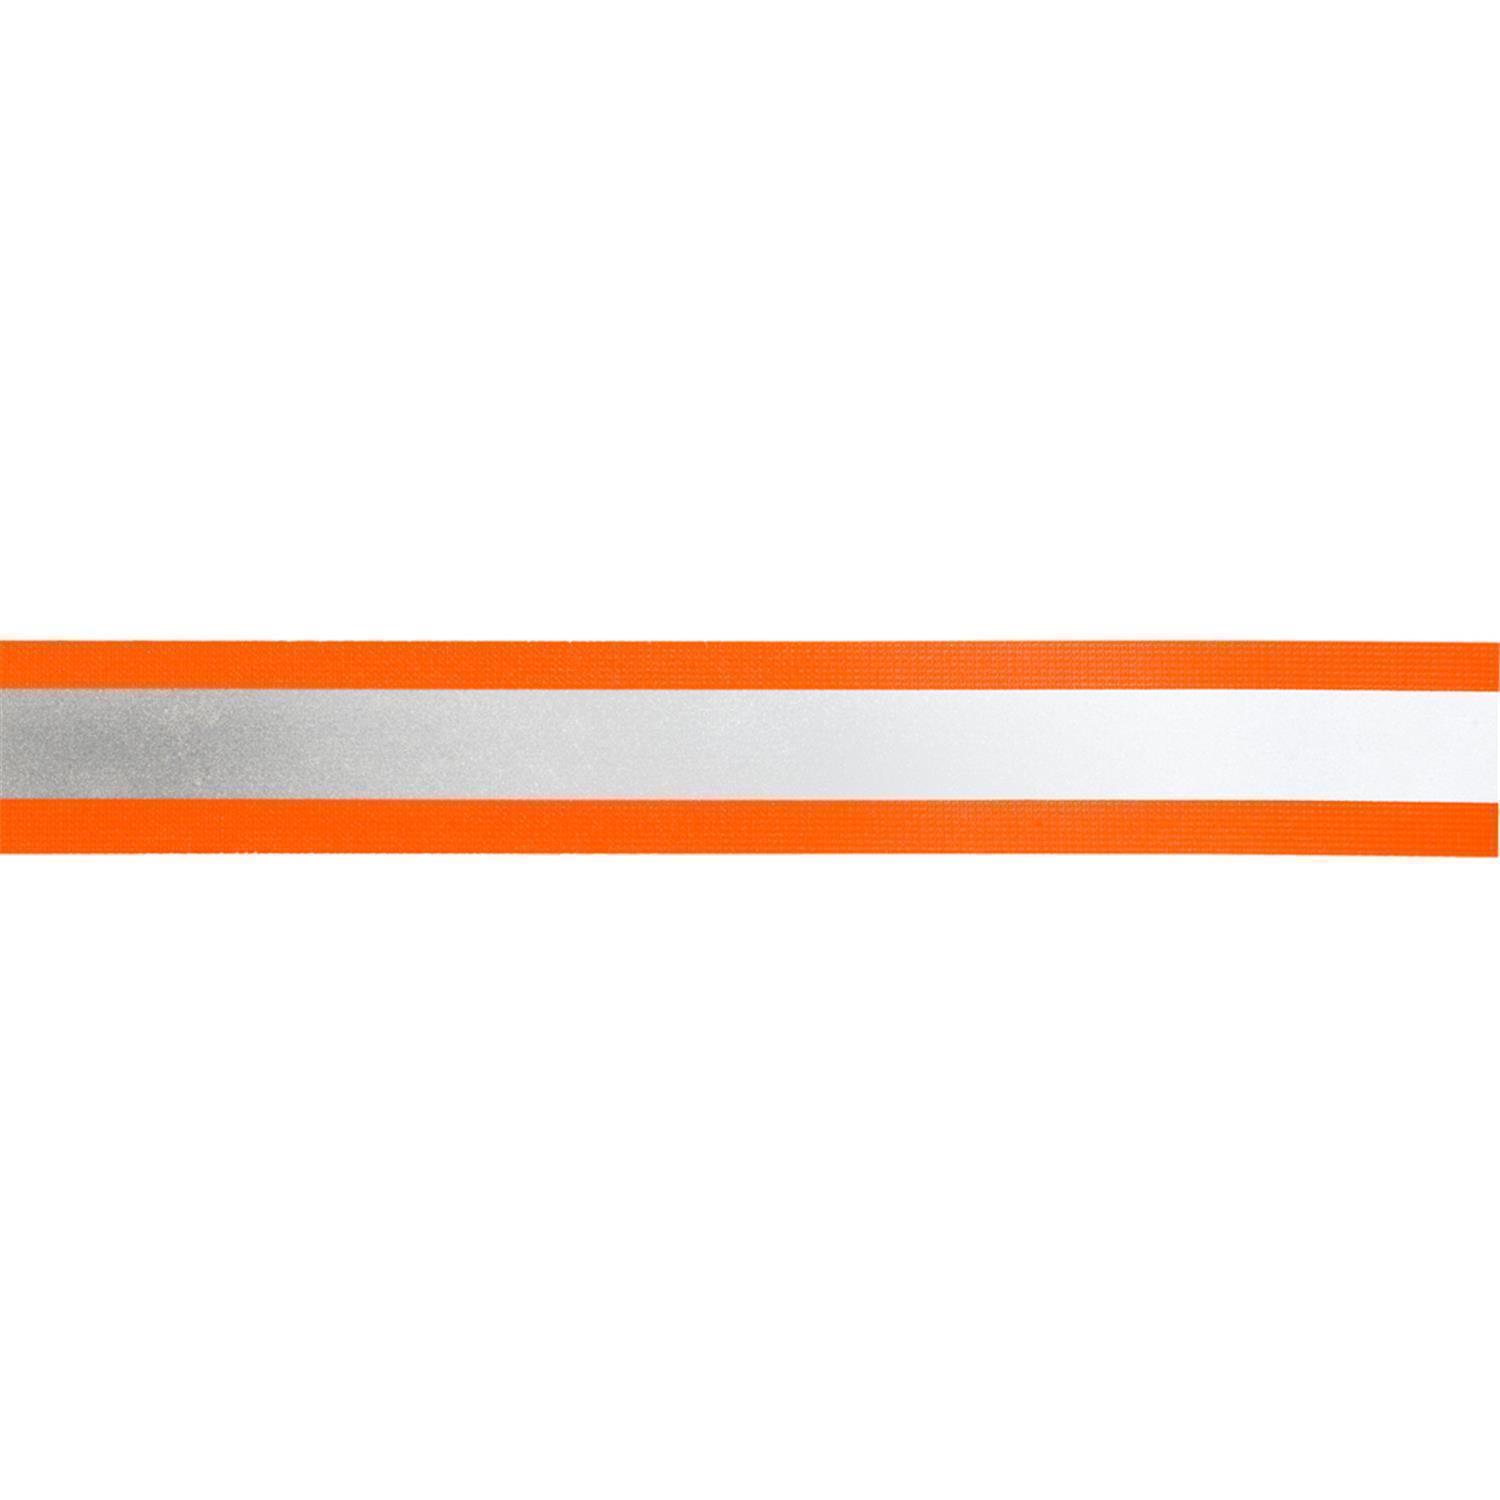 Reflektorband 50mm breit in 2 Farben orange-silber 50 Meter